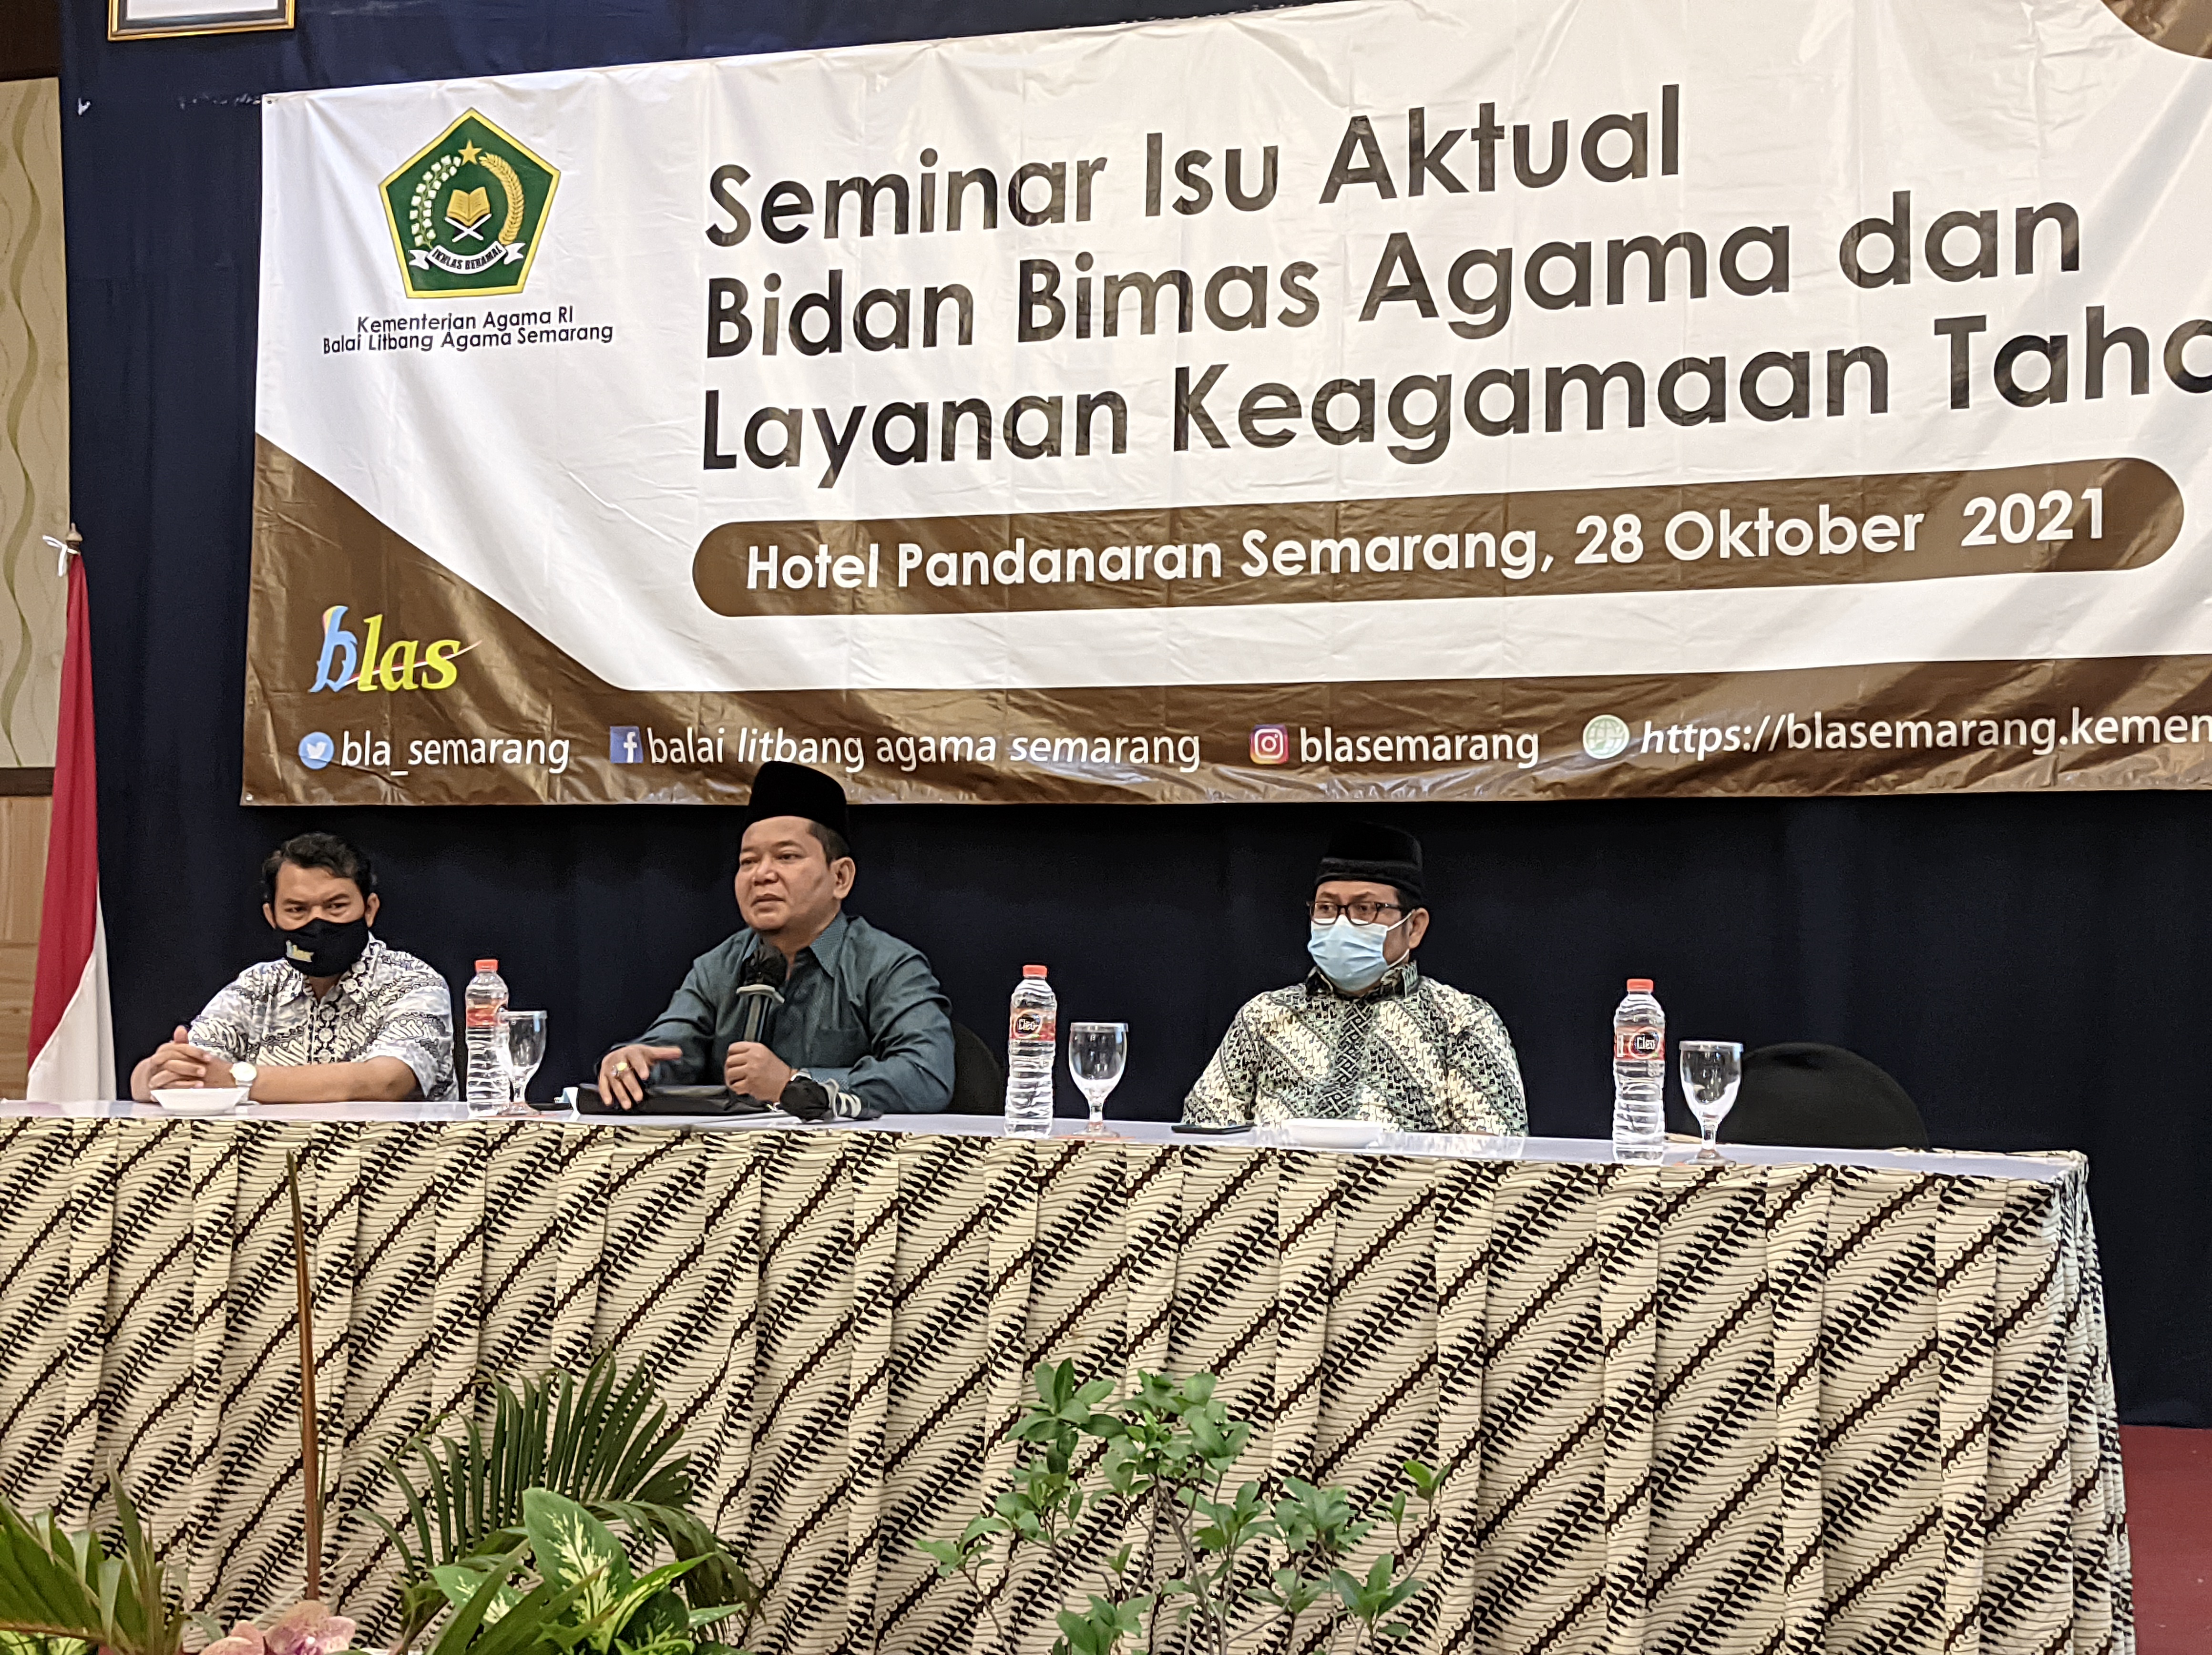 Rembug Moderasi Beragama dalam Seminar Isu Aktual BLA Semarang